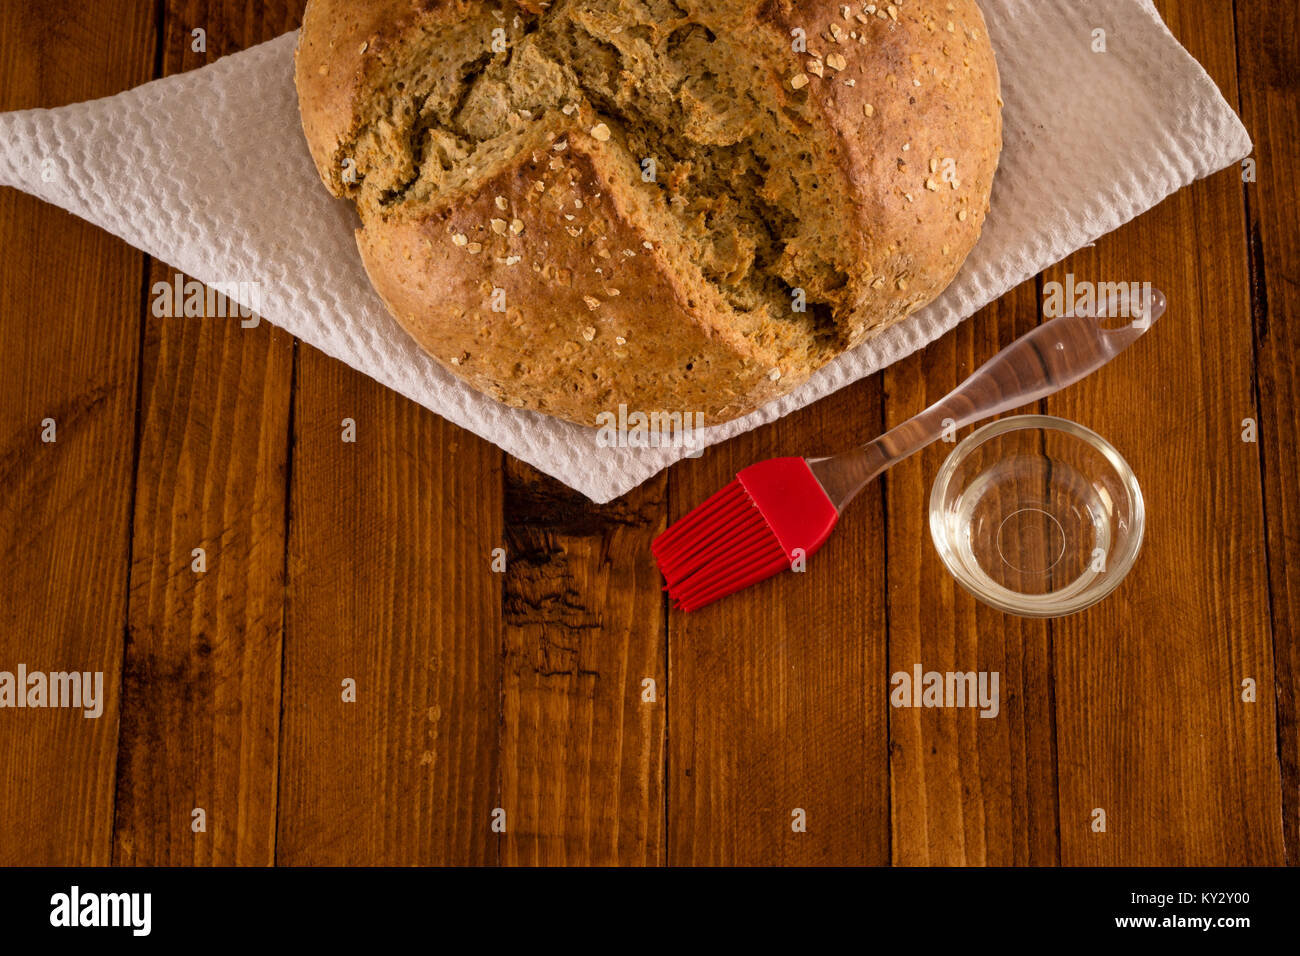 Soda Bread irlandais traditionnel faite pour la St Patrick's Day, à mélanger l'huile et servis sur table en bois Banque D'Images